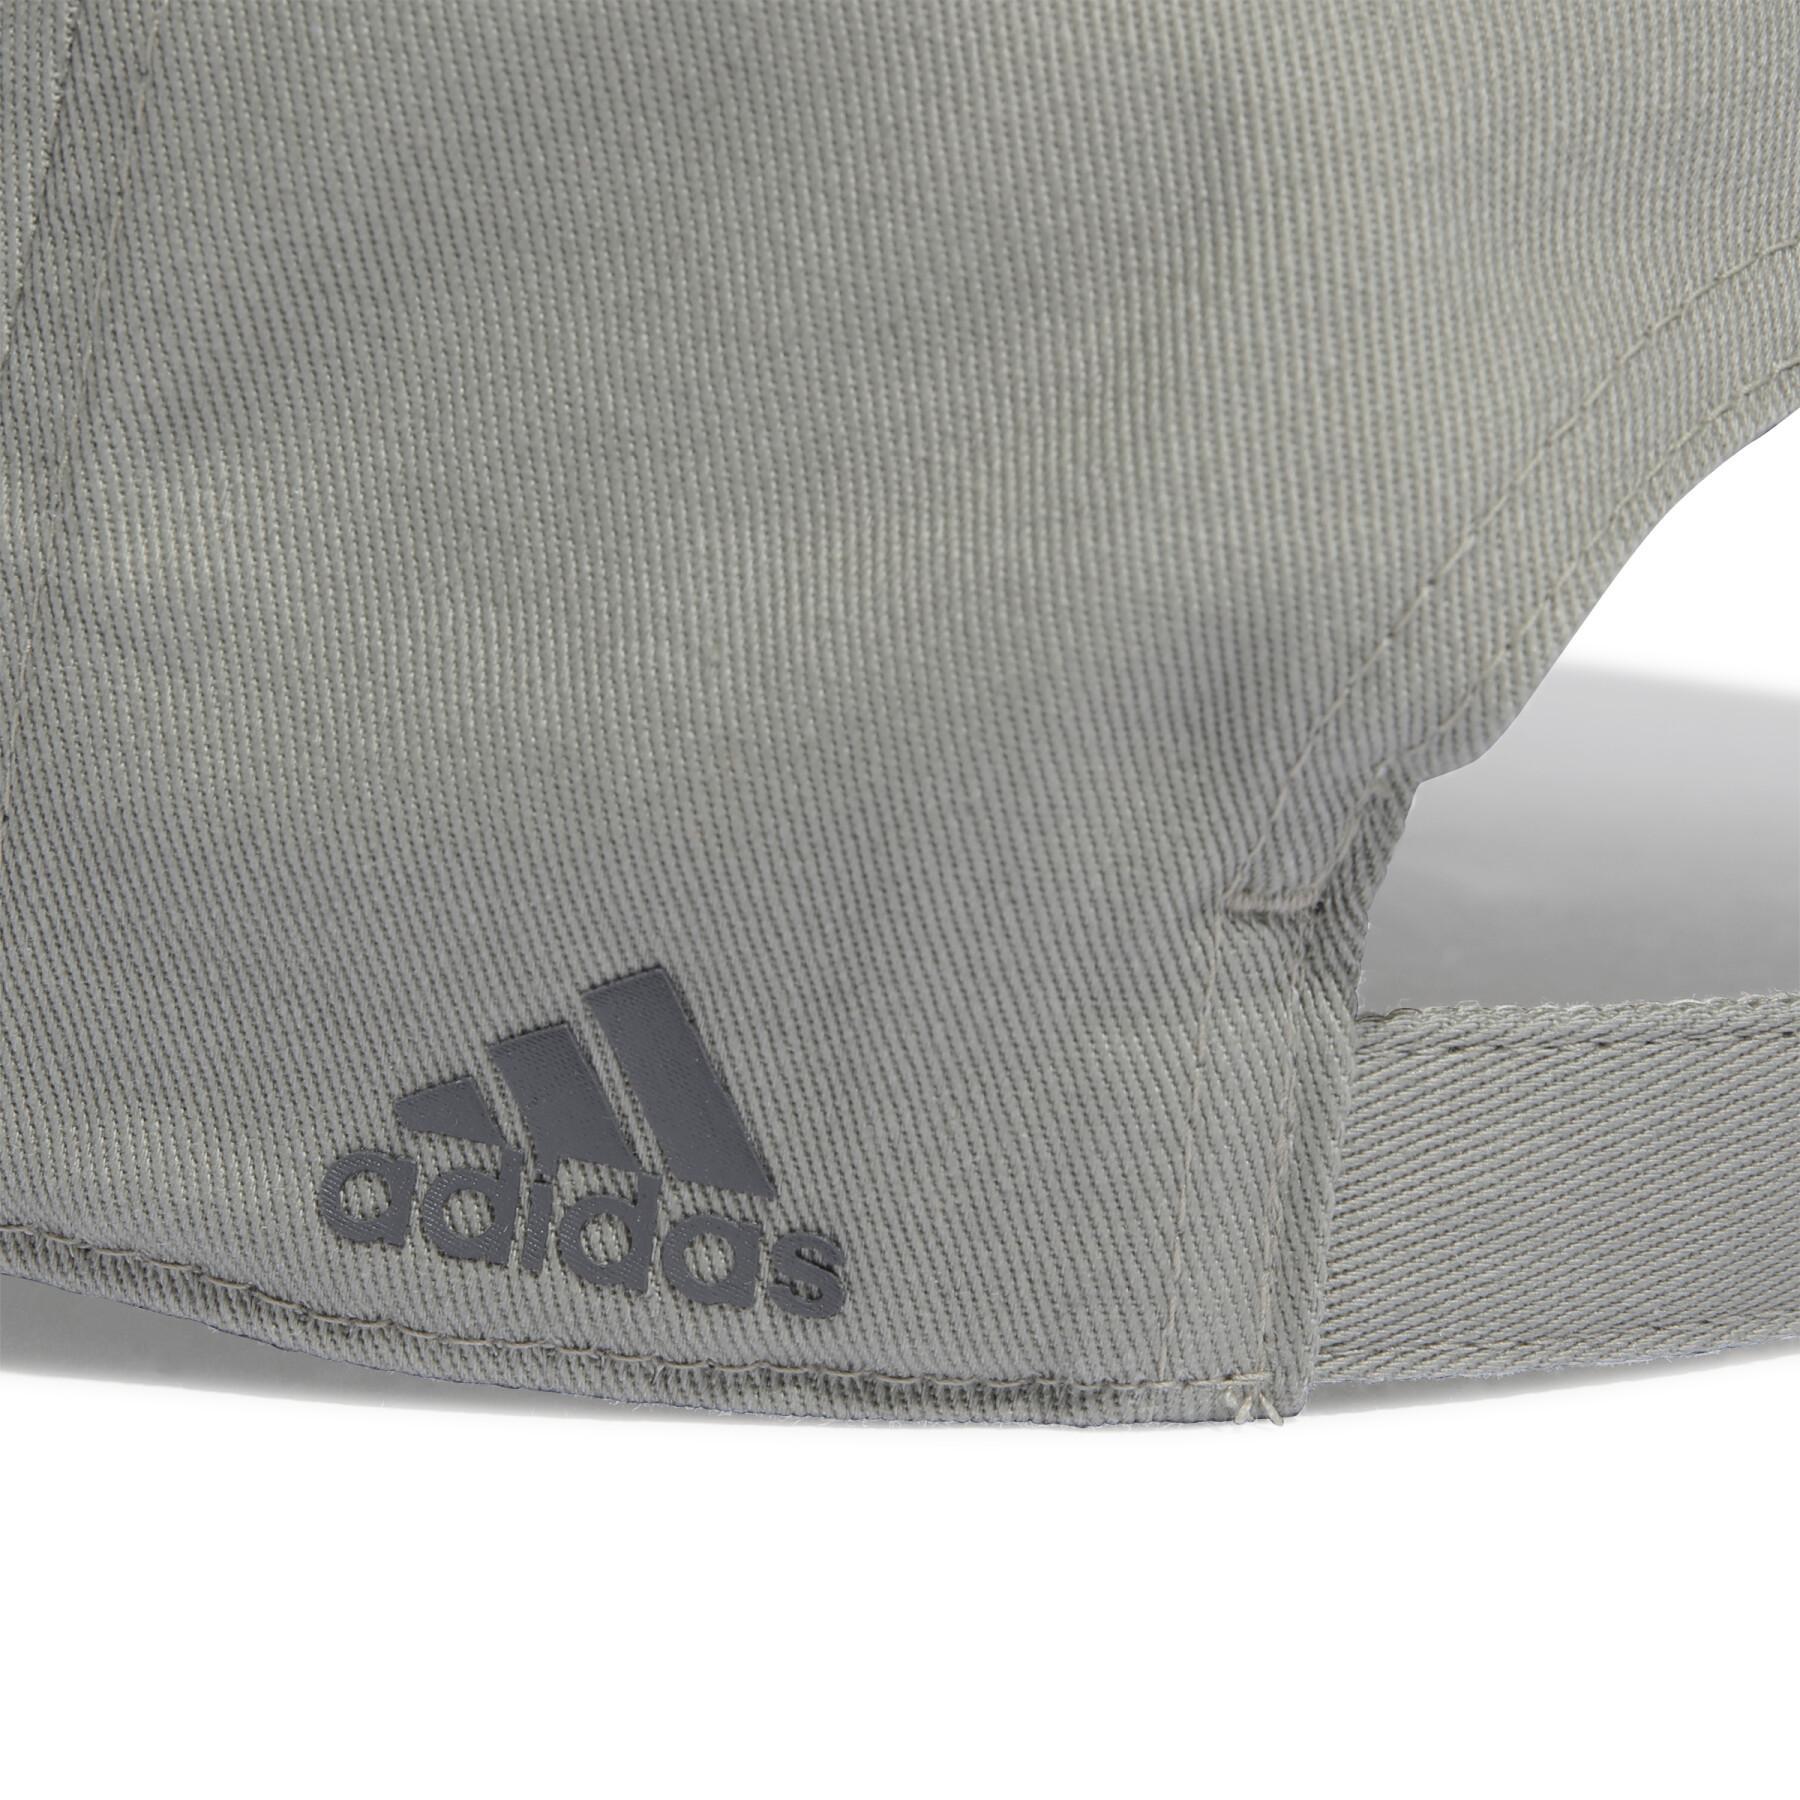 Czapka z podkreślonym logo adidas